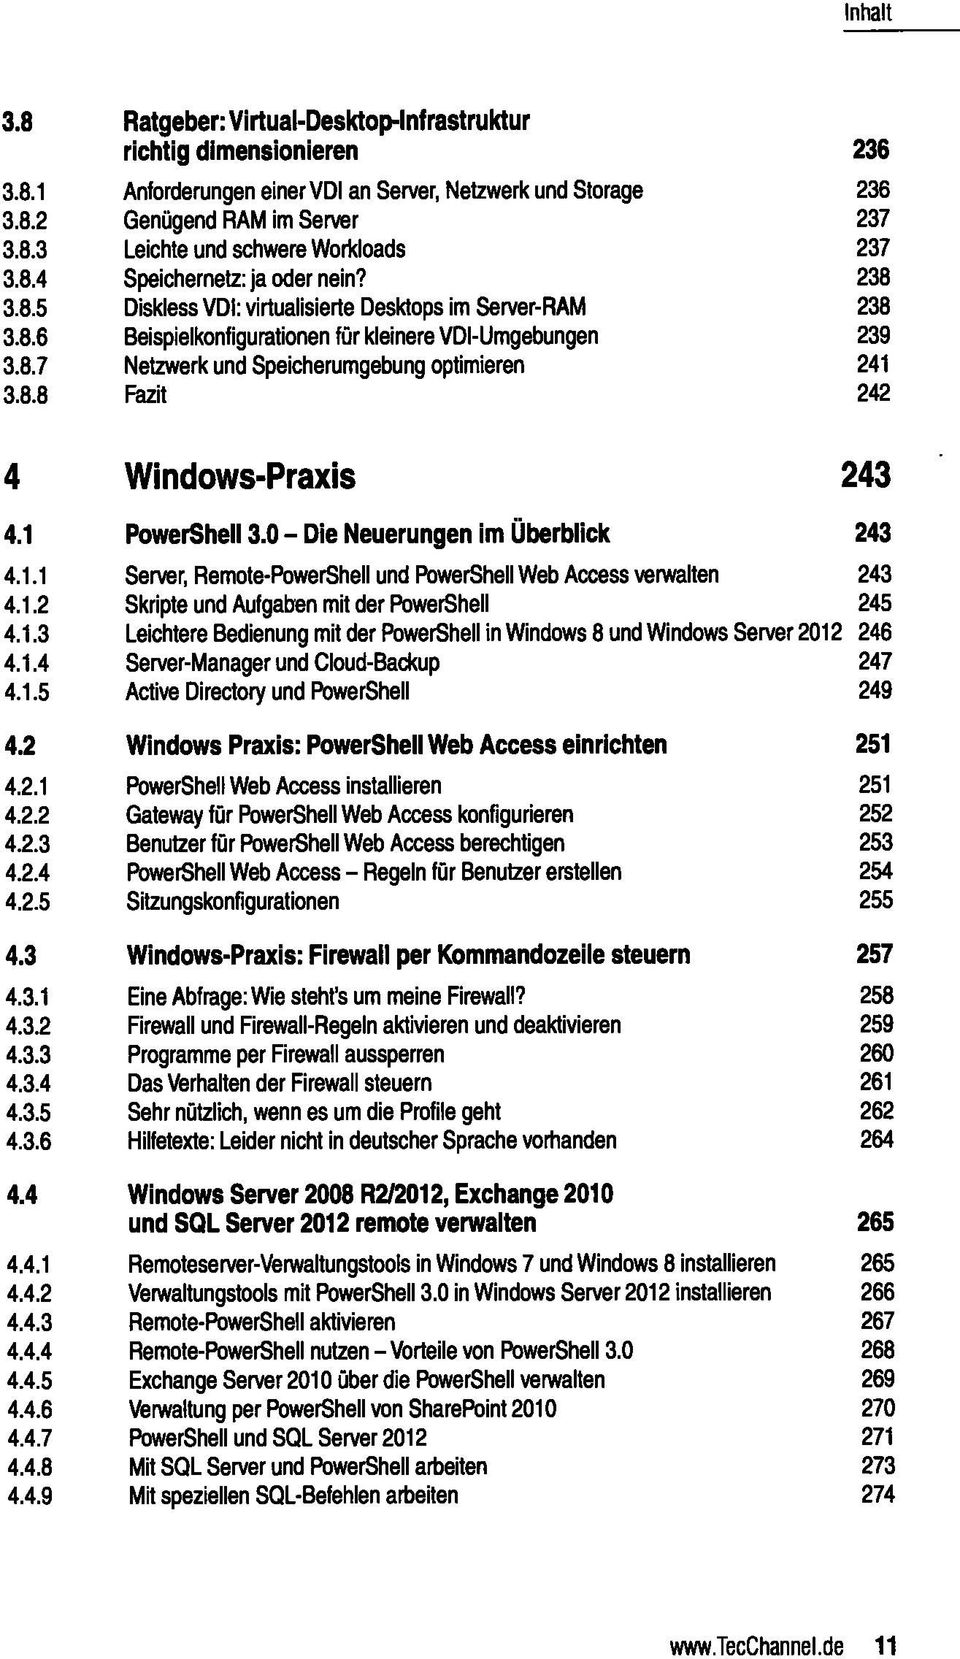 7 Netzwerk und Speicherumgebung optimieren 241 8.8 Fazit 242 4 Windows-Praxis 243 4.1 PowerShell 0 - Die Neuerungen im Überblick 243 4.1.1 Server, Remote-PowerShell und PowerShell Web Access verwalten 243 4.